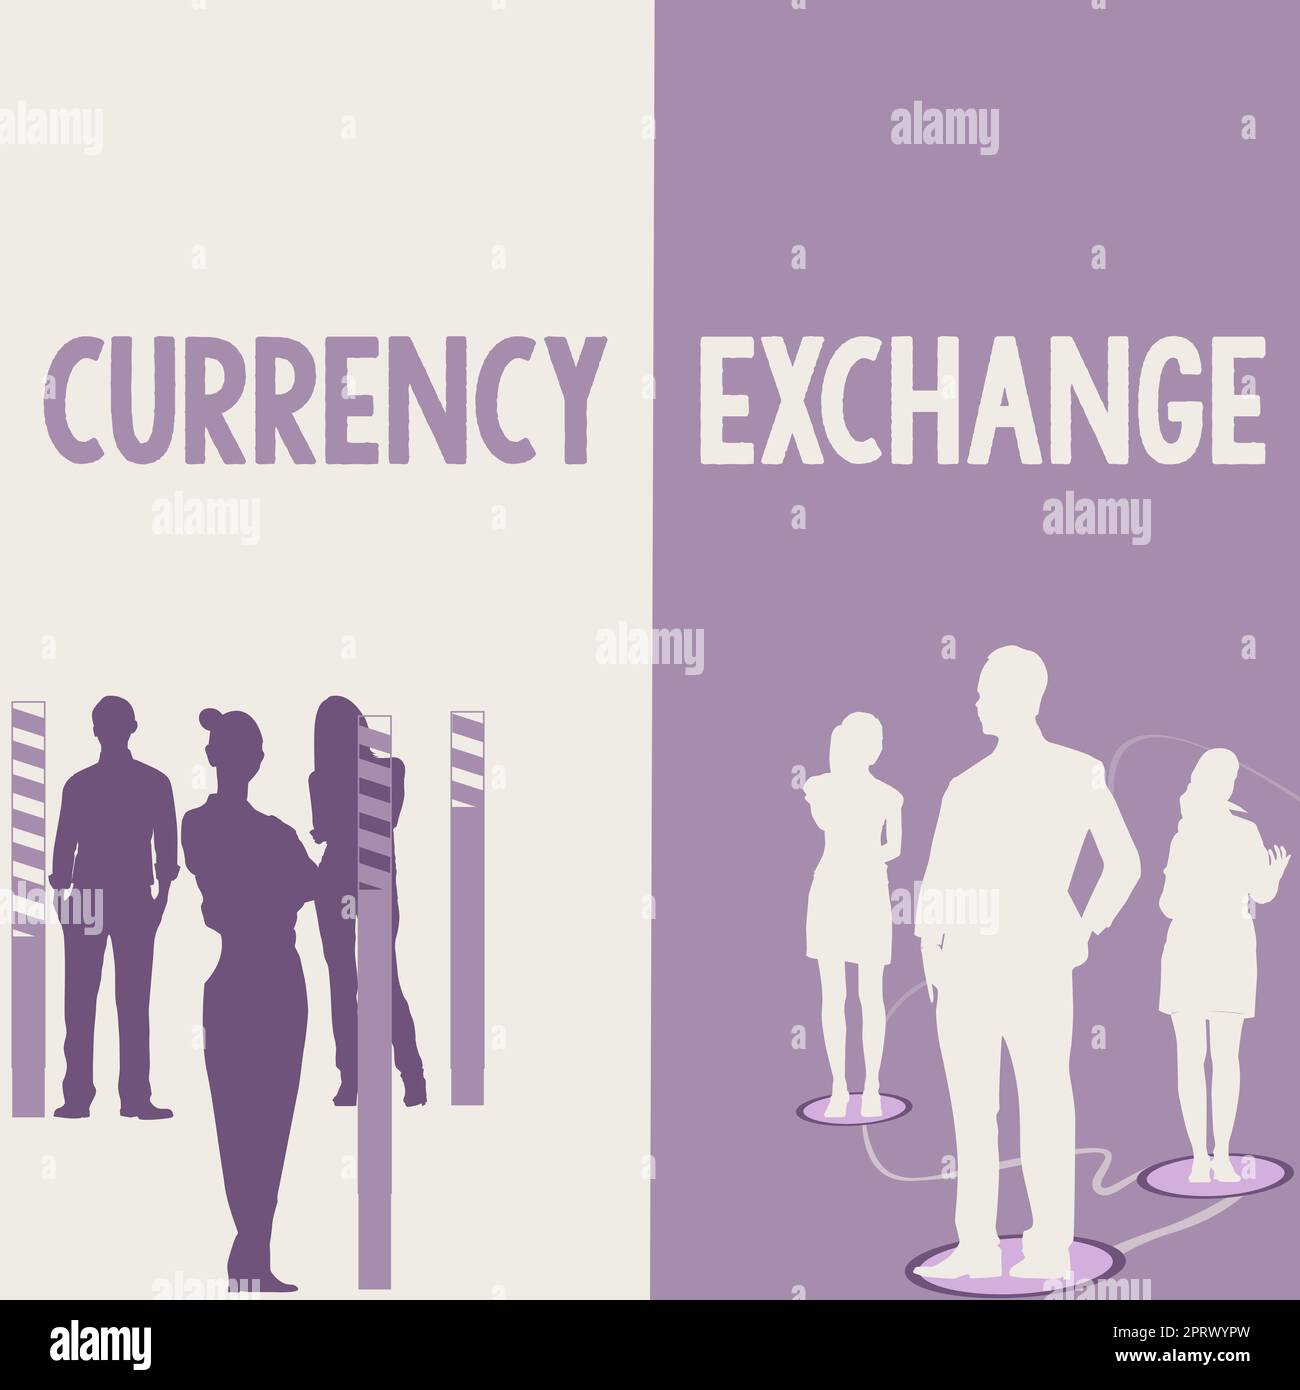 Inspiration für das Vorzeichen "Währungsumtausch", eine Währung in einen anderen Devisen umzuwandeln. Wort für Wort, um eine Währung in einen anderen Devisen umzuwandeln Stockfoto